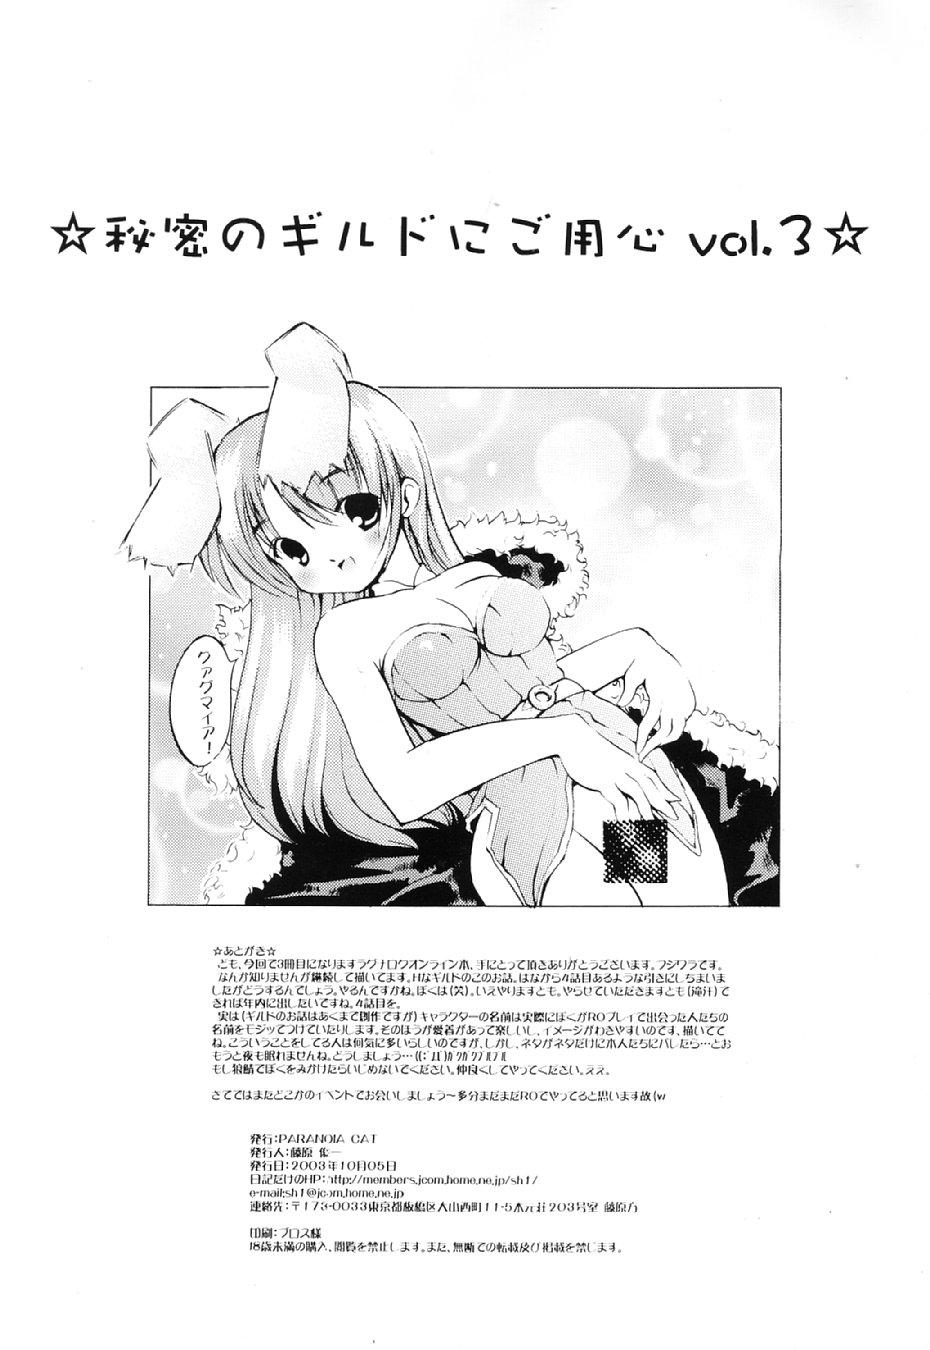 Porn Sluts Himitsu no Guild ni Goyoujin vol. 3 - Ragnarok online Anal - Page 2